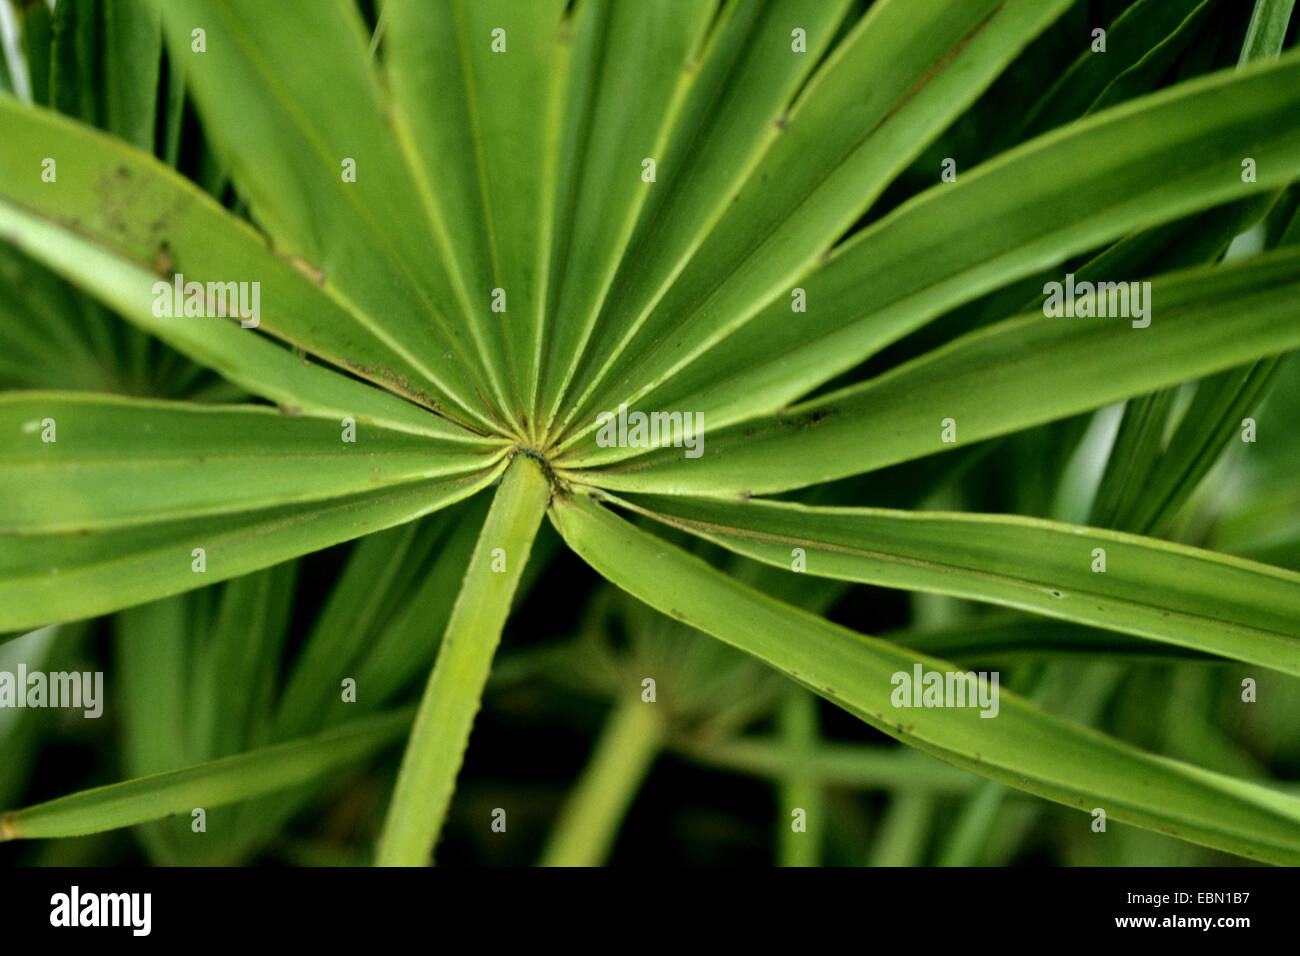 saw palmetto (Serenoa repens), leaf Stock Photo